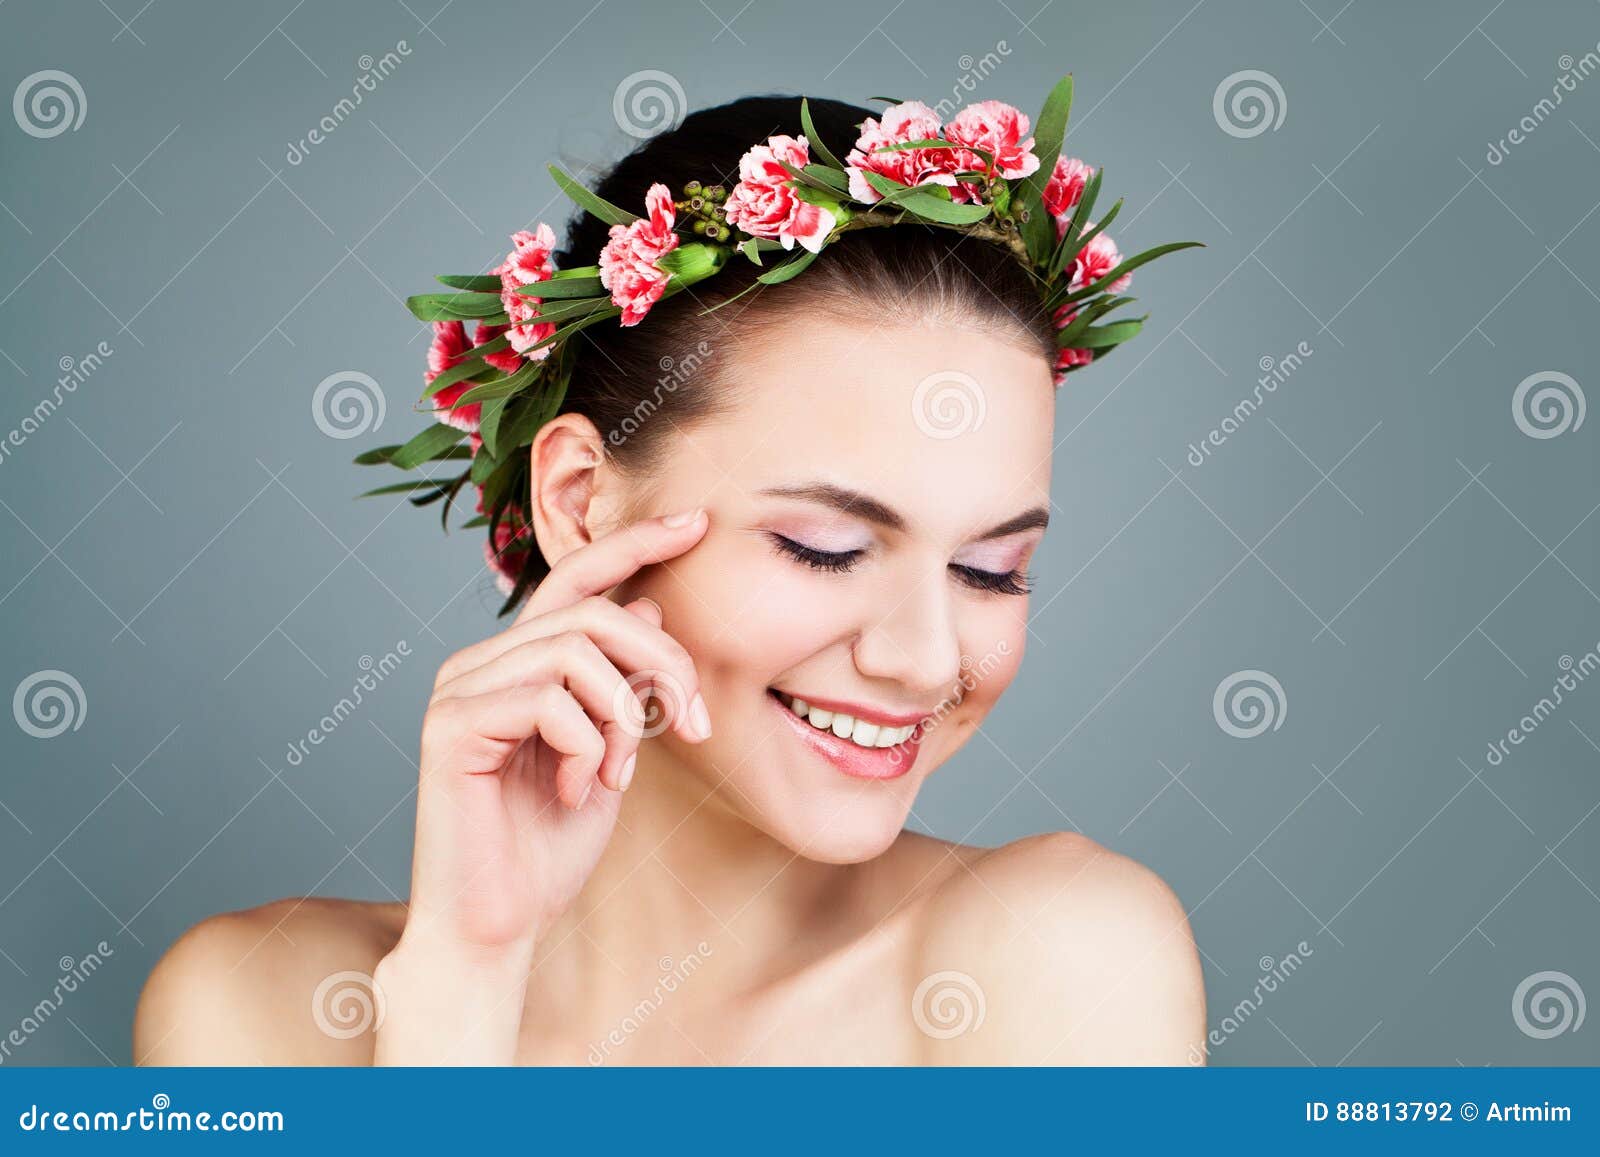 happy woman wearing flowers wreath